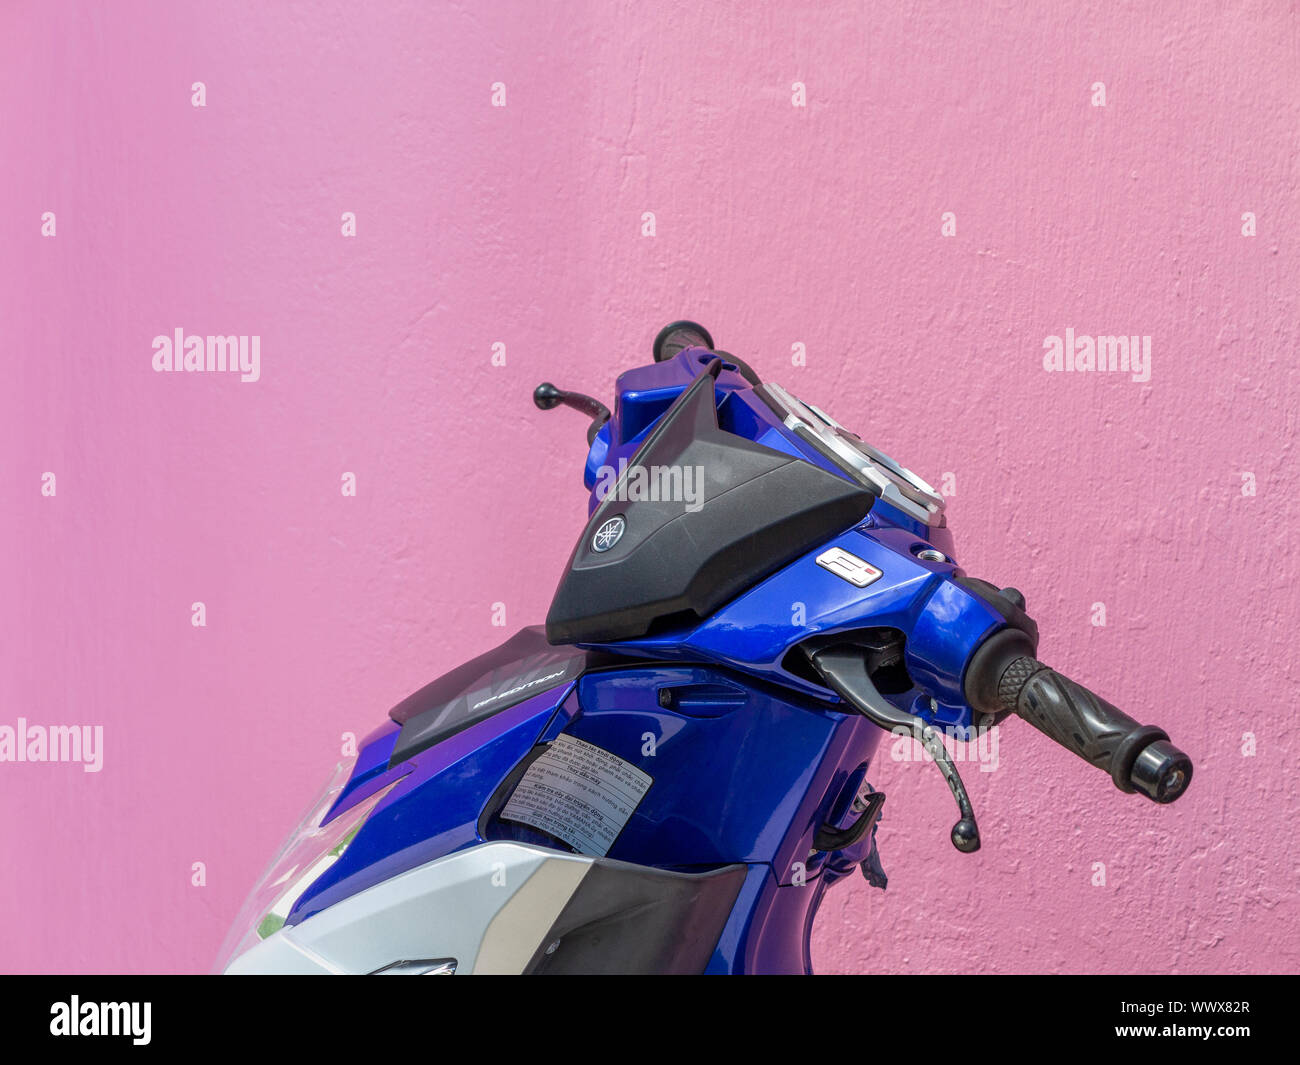 Le sommet d'un scooter montrant un guidon et cowling bleu contre un mur rose Banque D'Images